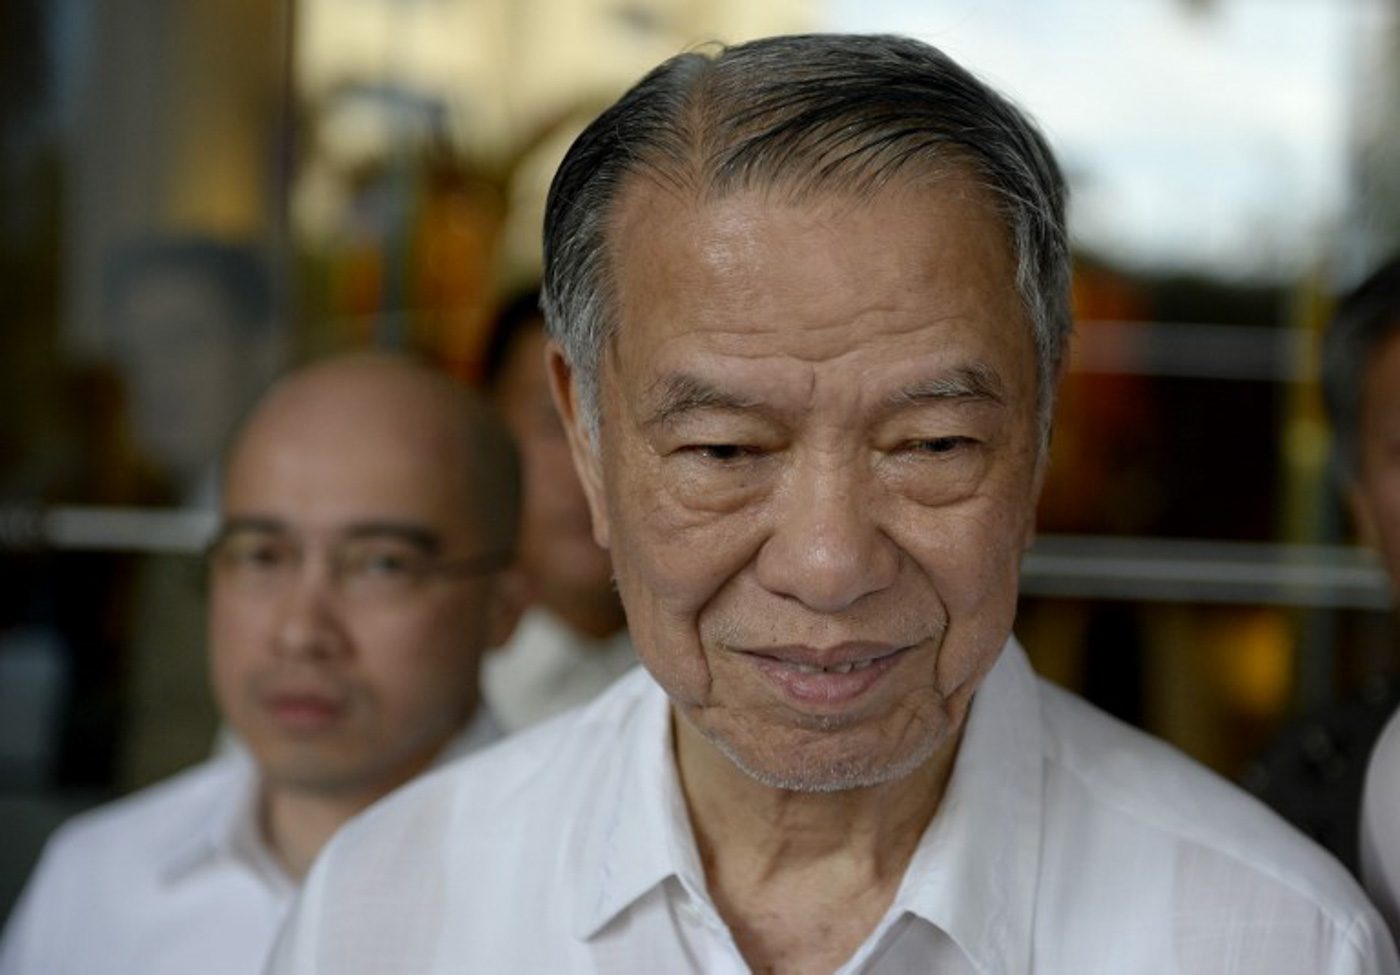 Lucio Tan steps down as PNB director but remains as chairman emeritus